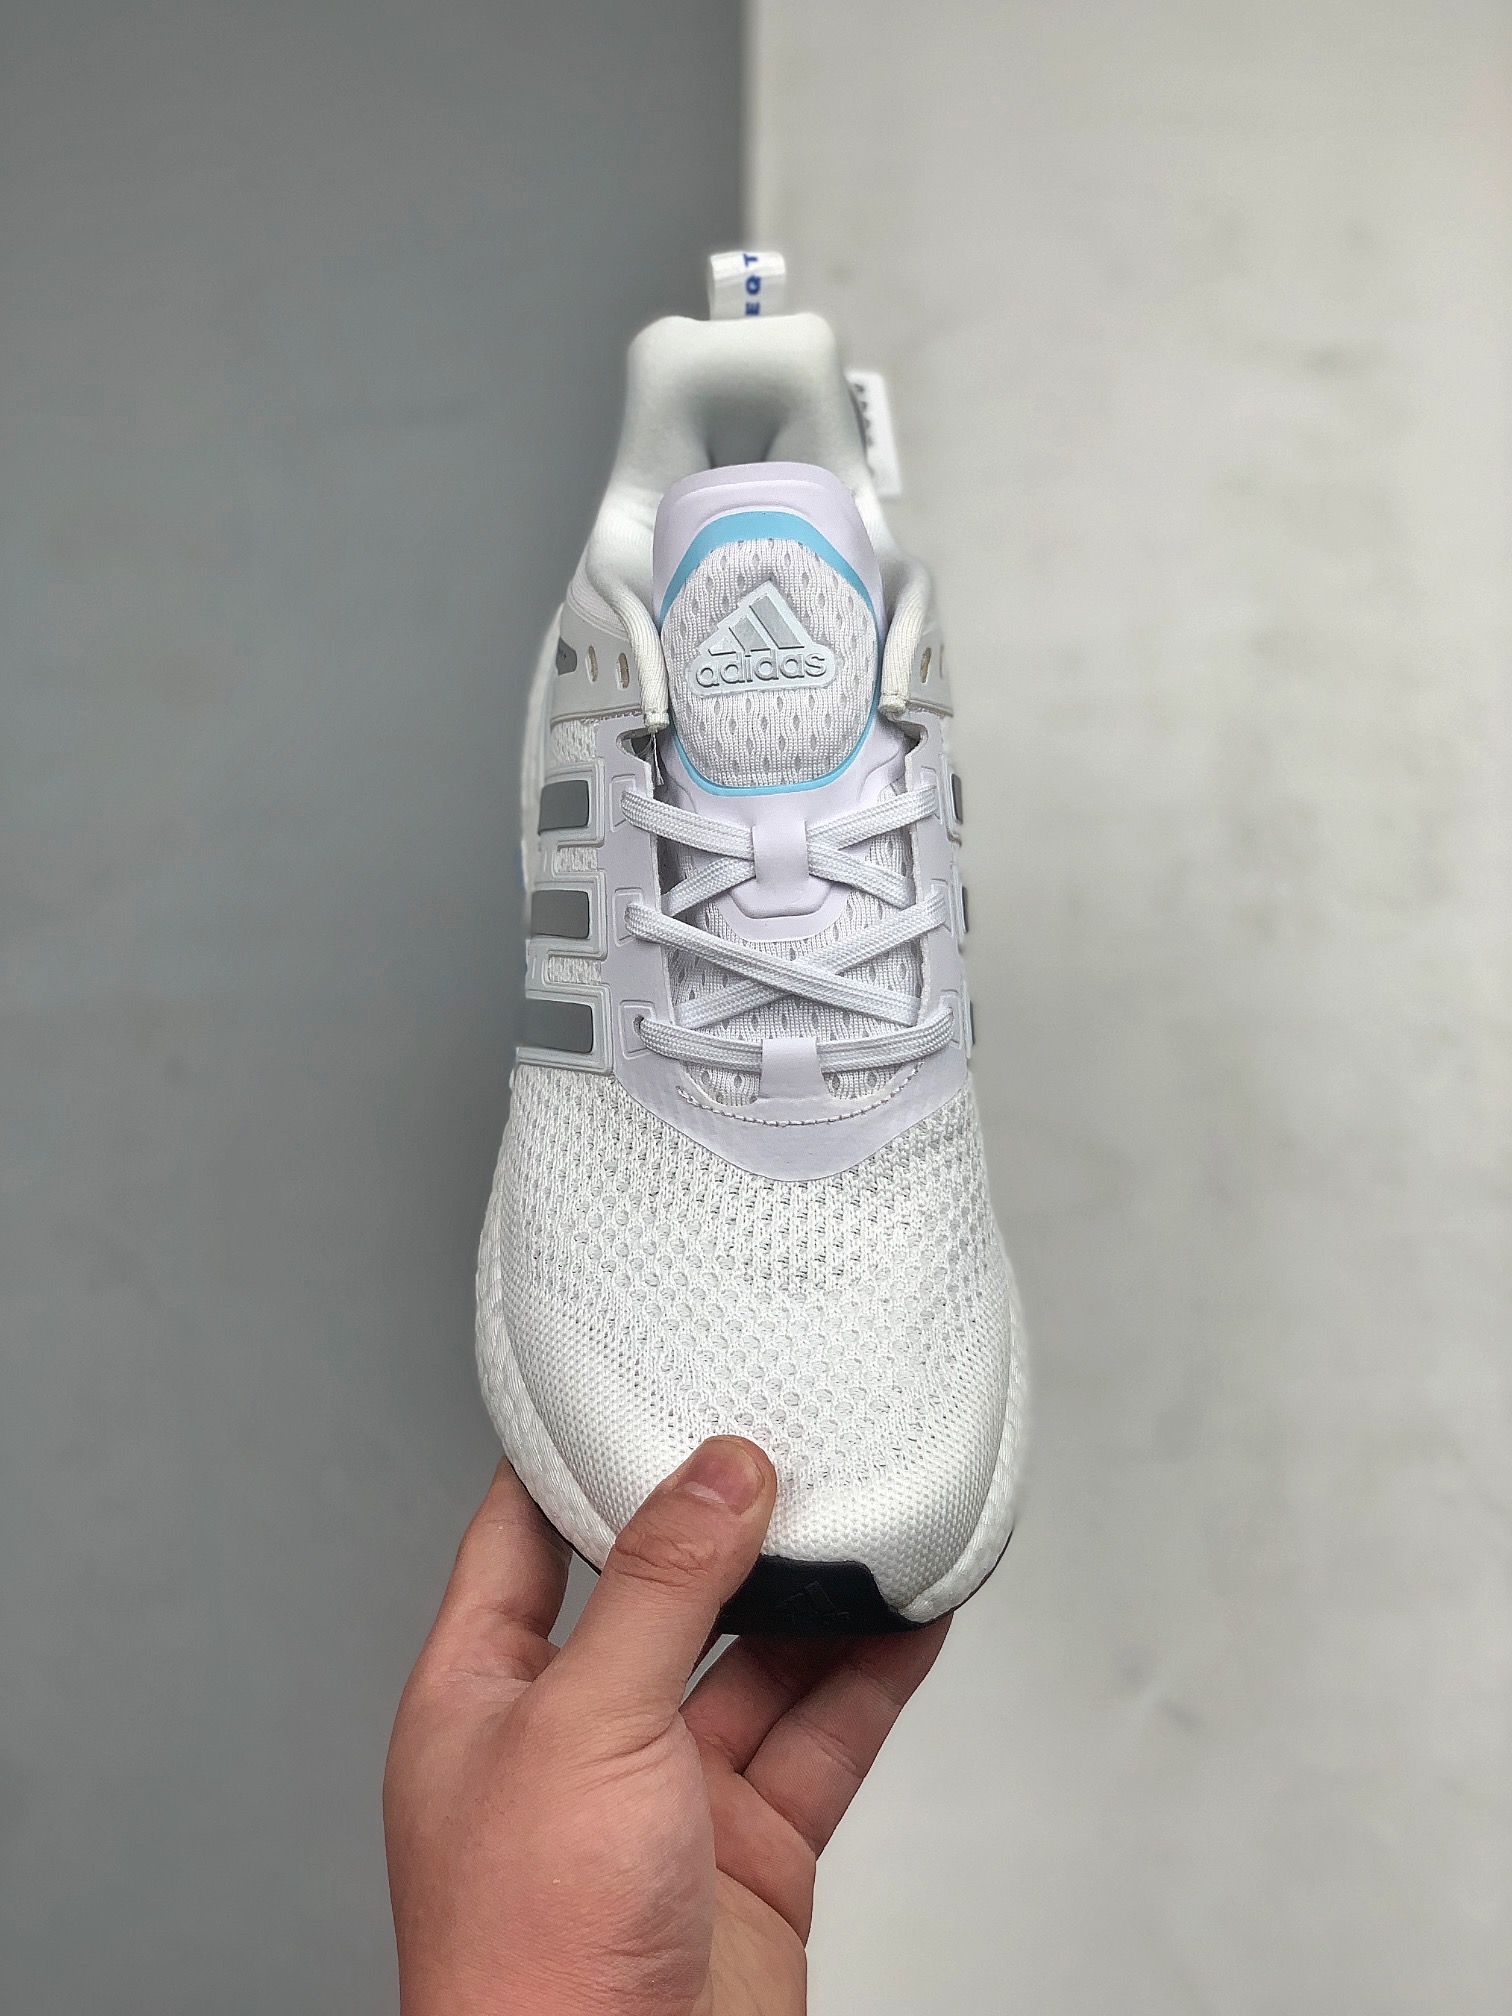 Adidas Equipment White Blue GW8919 - Premium Athletic Sneakers